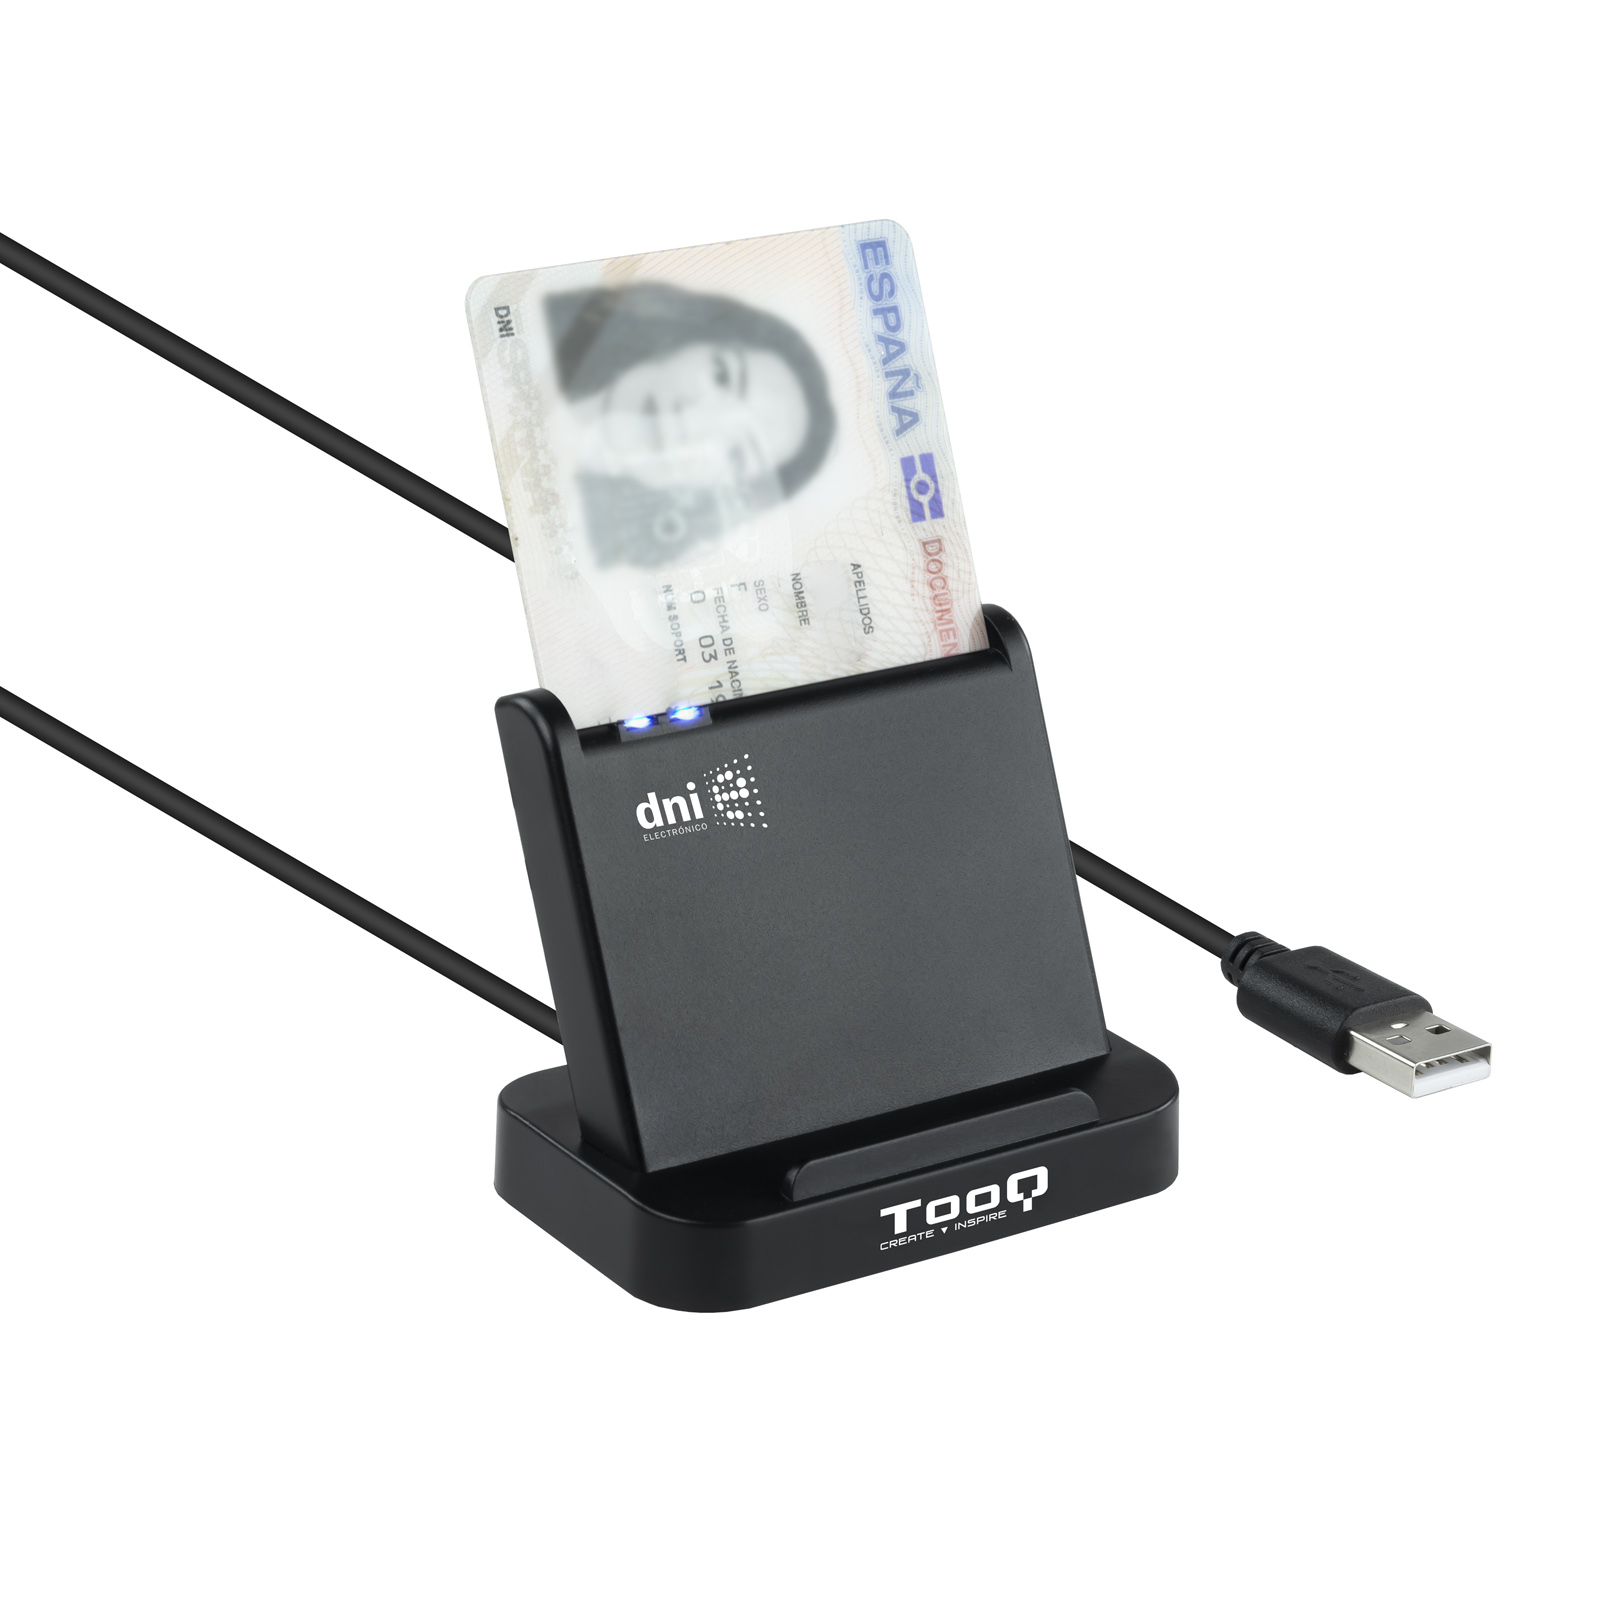 Lecteur de carte à puce Tooq DNIe VISION USB 2.0 - Couleur Noir